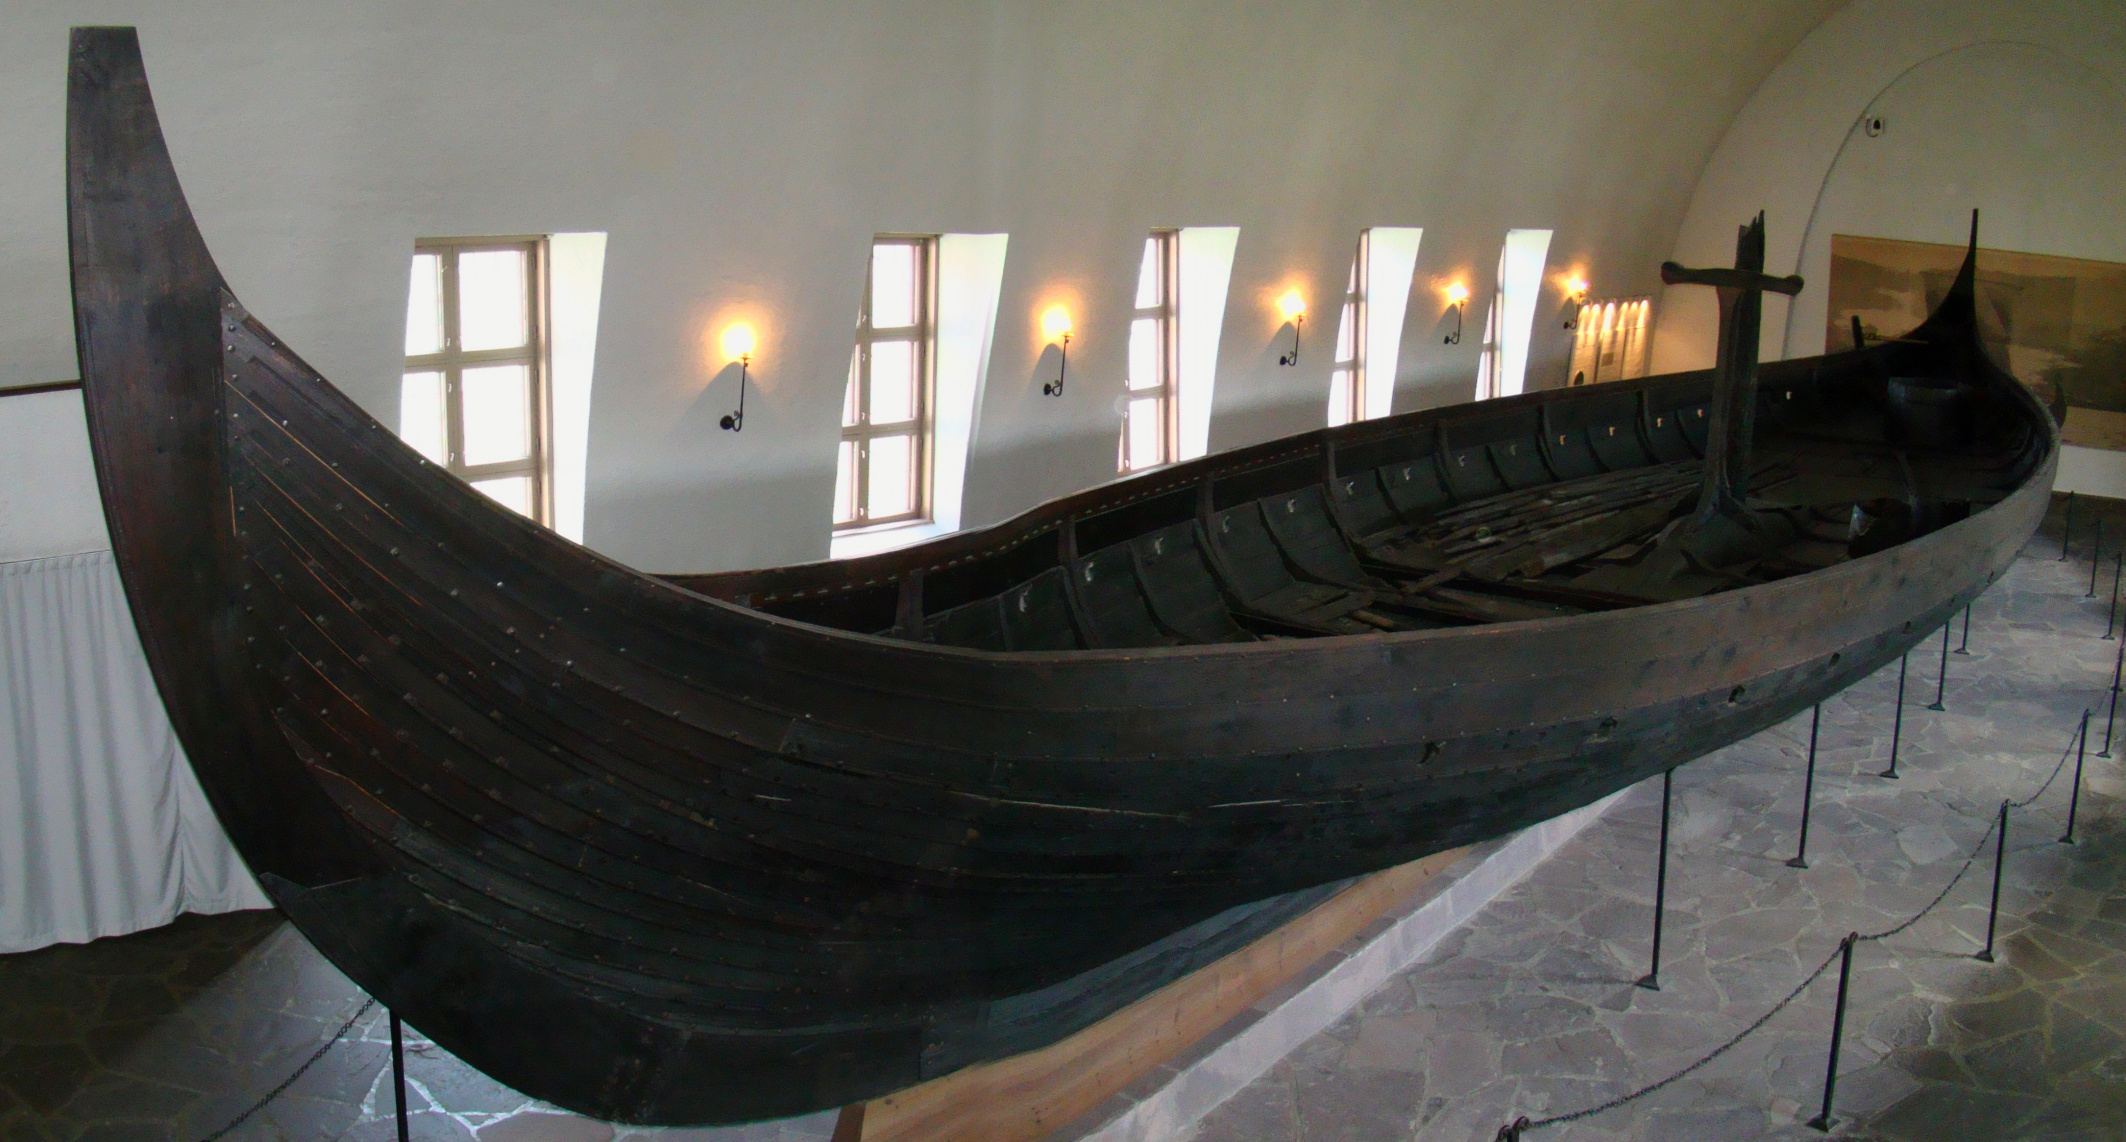 Корабель Гокстад у спеціально побудованому музеї кораблів вікінгів в Осло, Норвегія. Корабель має 24 метри в довжину і 5 метрів в ширину і вміщує 32 чоловіки з веслами.